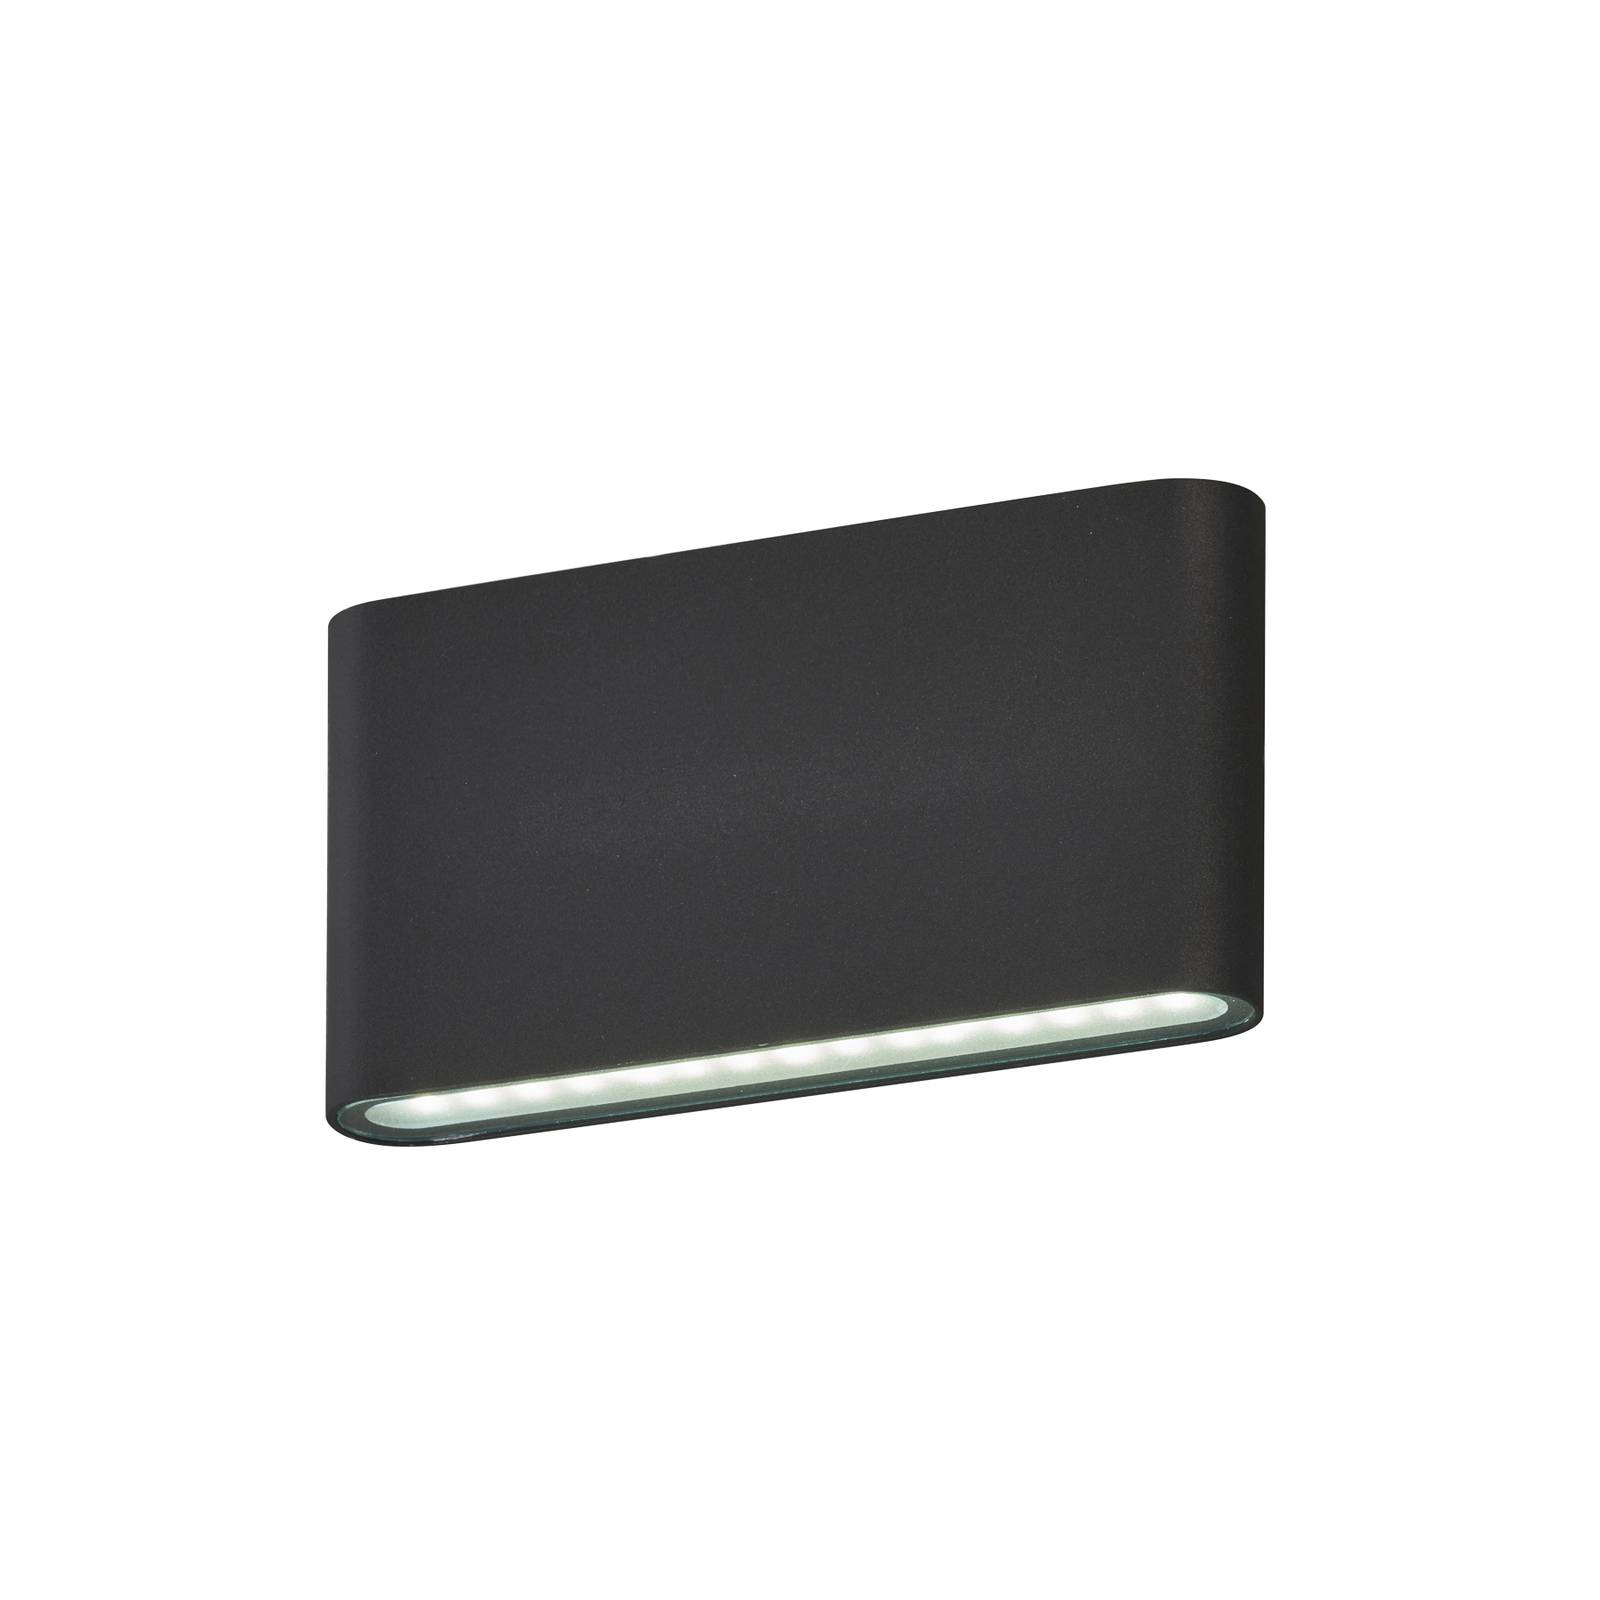 Scone LED utendørs vegglampe svart bredde 17,5 cm 2 lys.